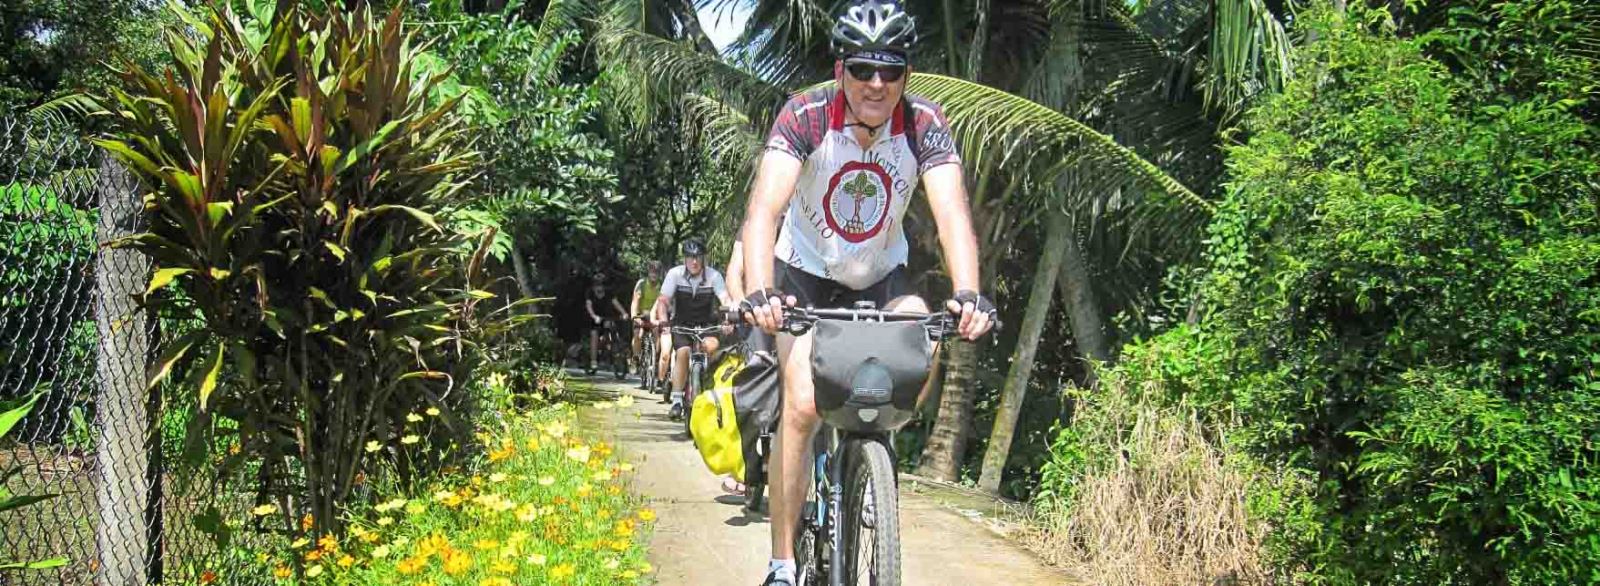 La promenade à vélo sur l’île de Tan Phong